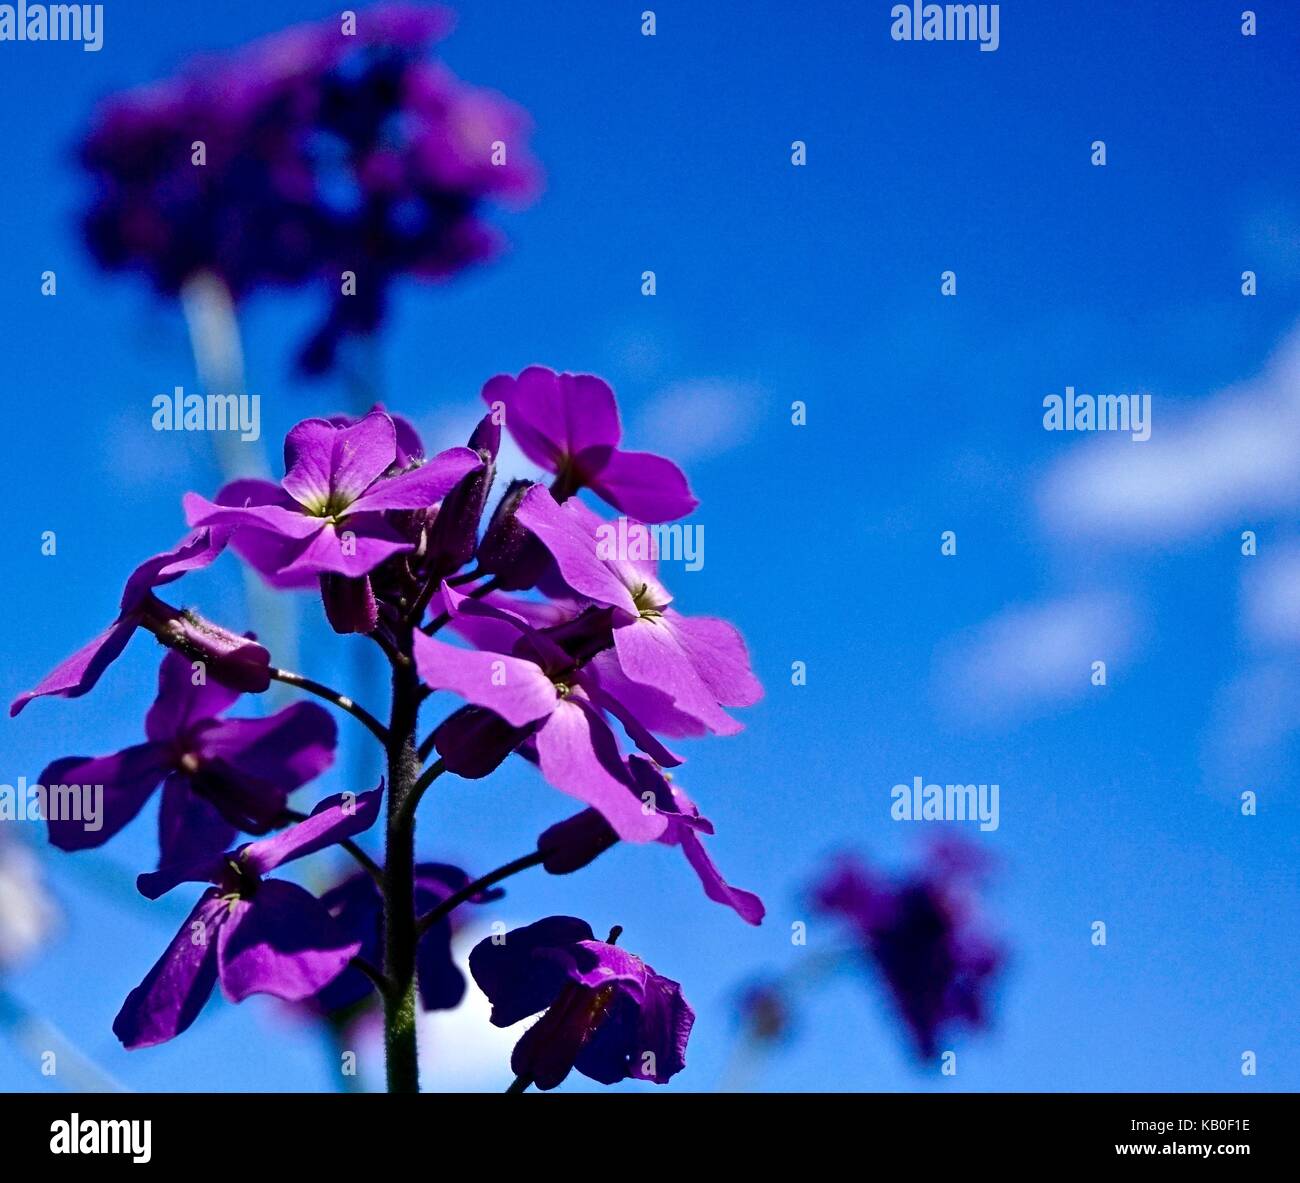 Phlox violet contre ciel bleu Banque D'Images